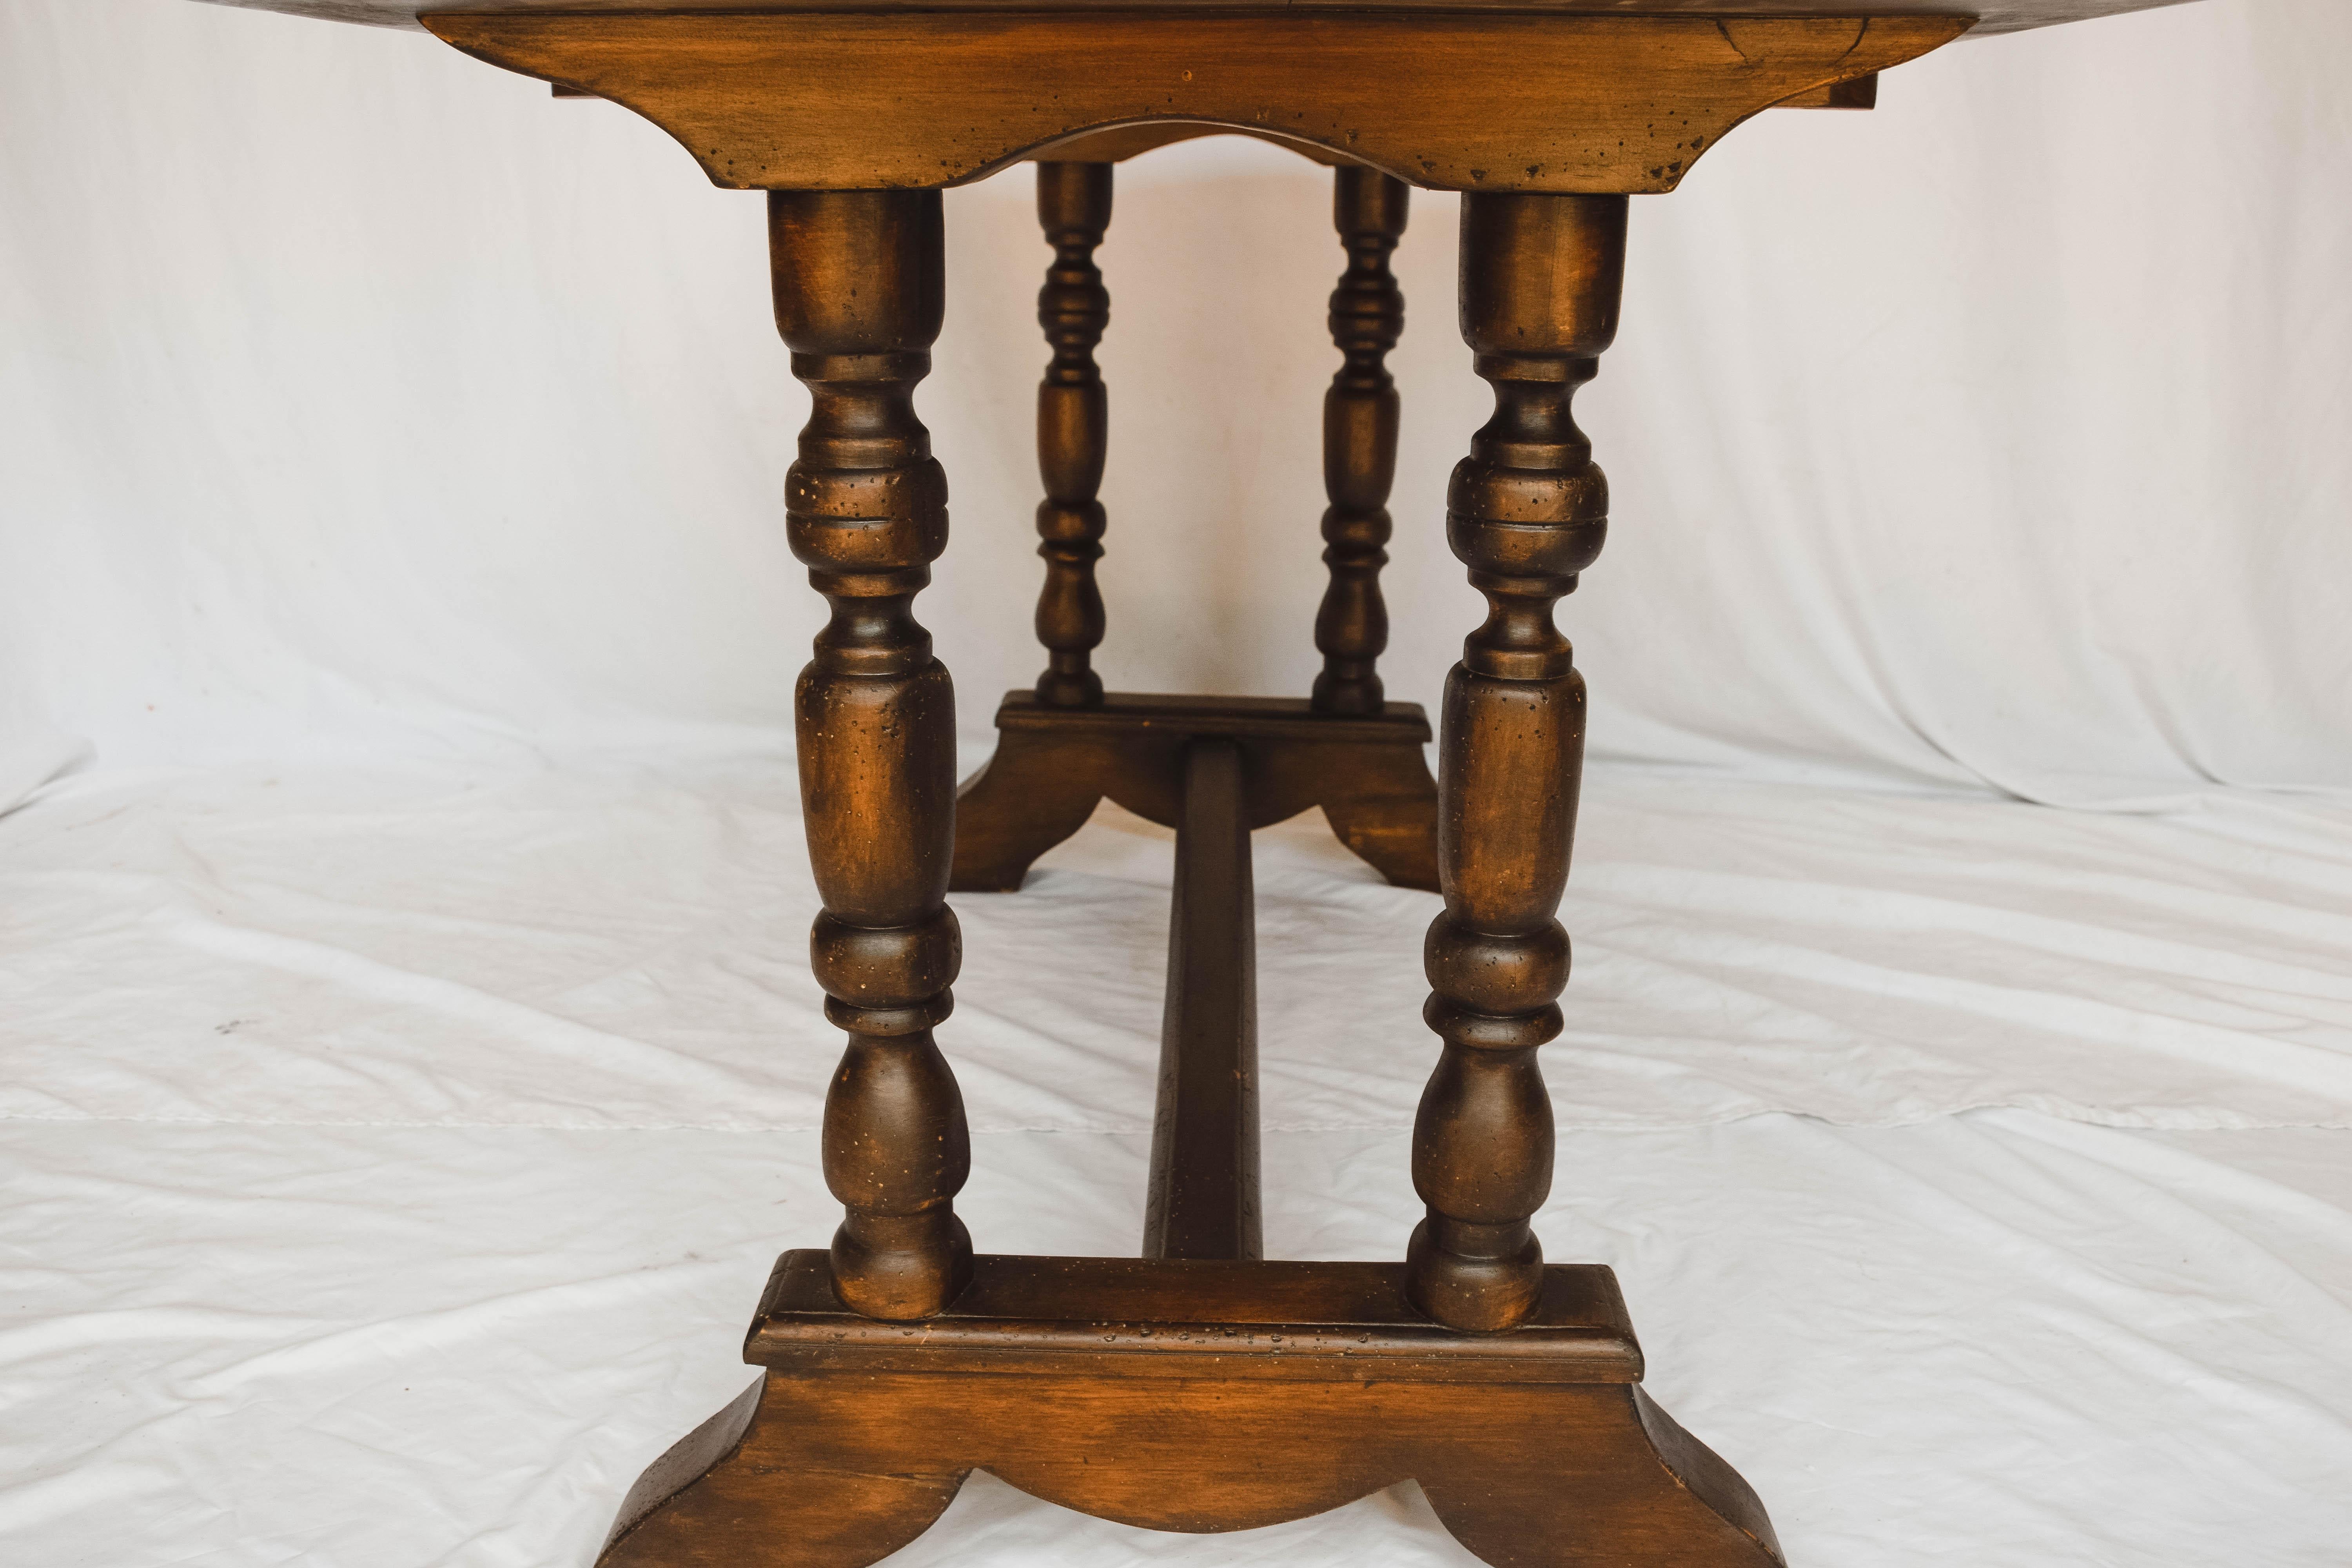 Fantastischer Konsolentisch aus Holz mit Bocksockel und gedrechselten Beinen. Dieser Tisch ist dunkel gebeizt und würde sich perfekt für einen Eingangsbereich eignen. Er kann auch als Spieltisch oder als perfekter Ort für ein Puzzle verwendet werden.